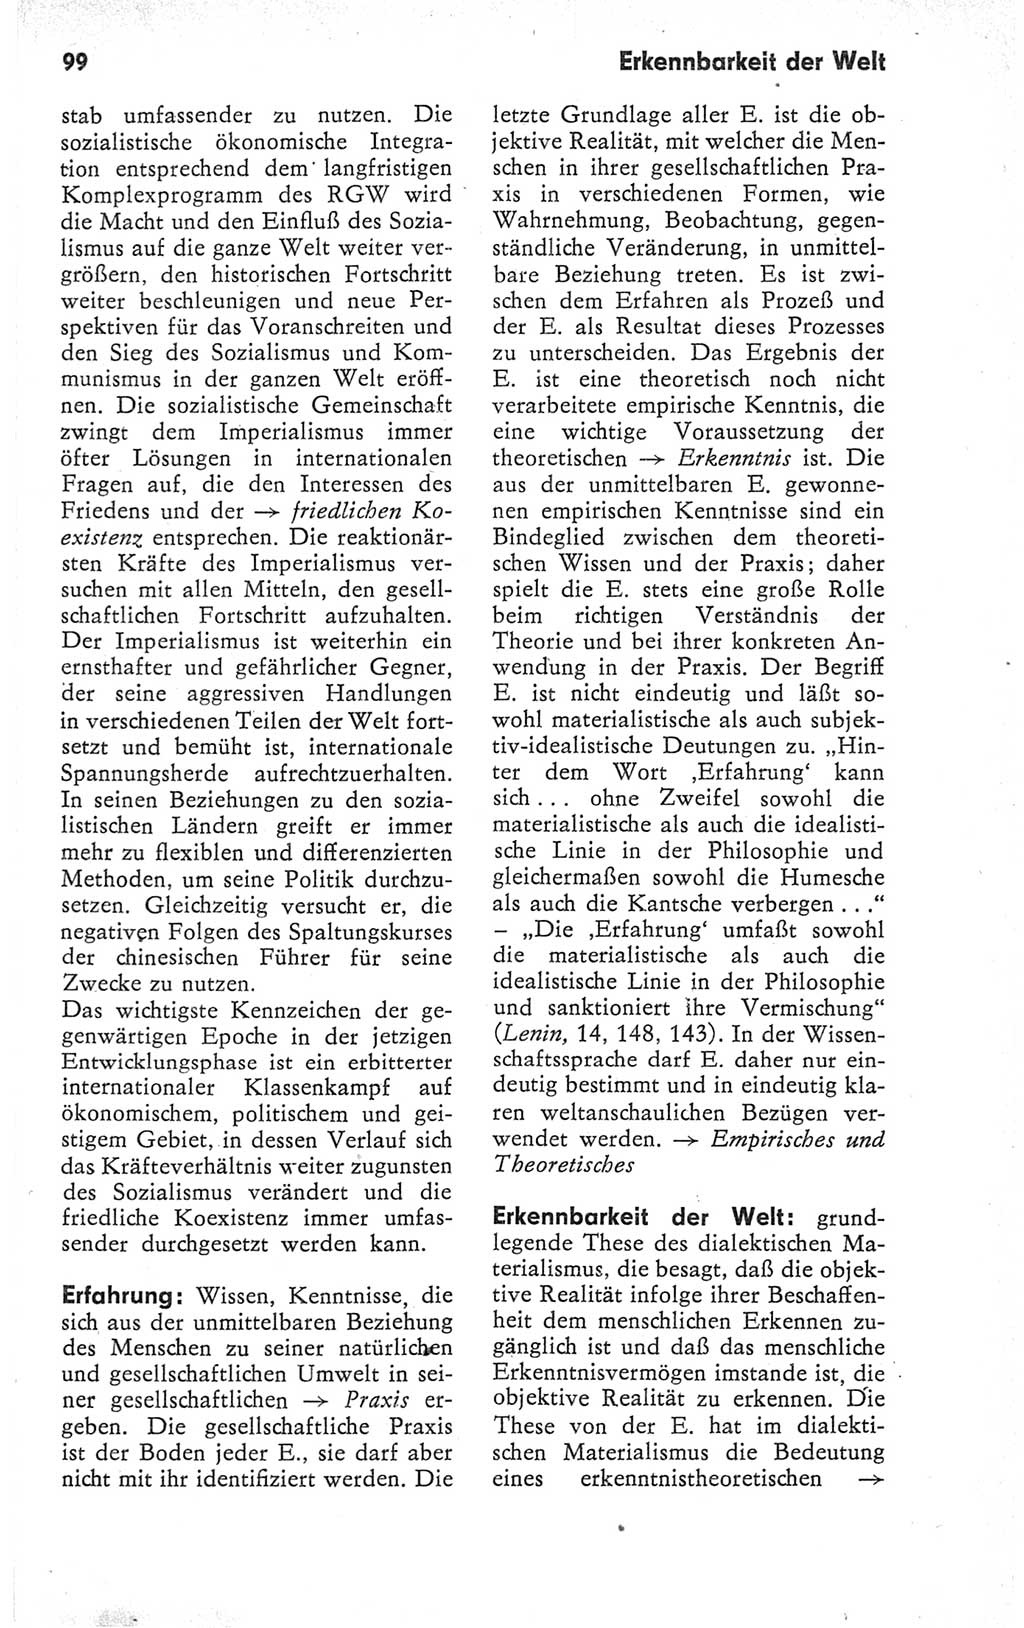 Kleines Wörterbuch der marxistisch-leninistischen Philosophie [Deutsche Demokratische Republik (DDR)] 1979, Seite 99 (Kl. Wb. ML Phil. DDR 1979, S. 99)